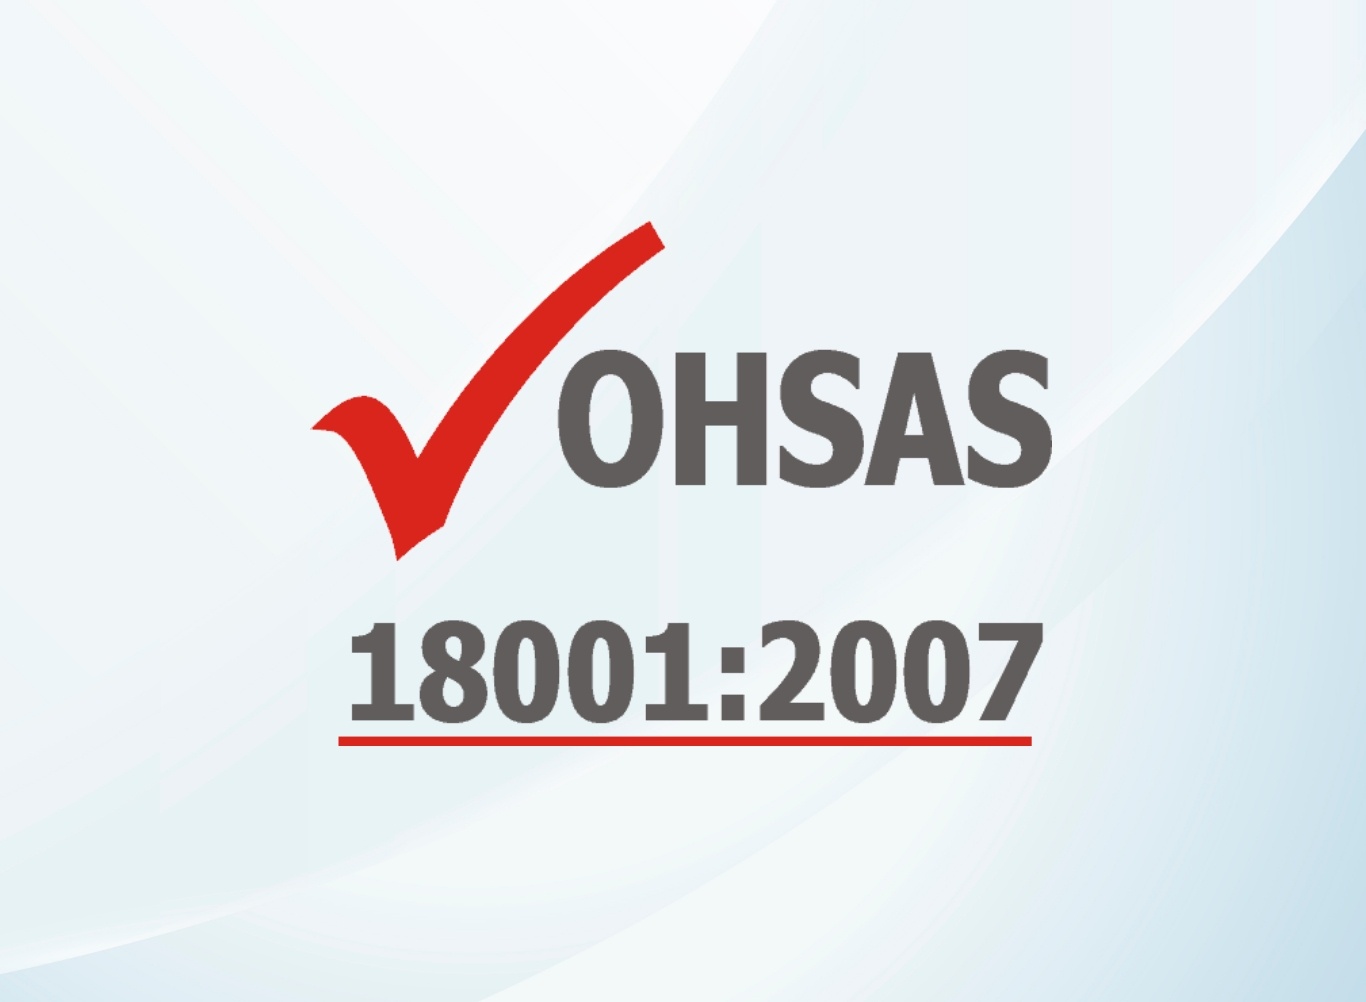 ใบรับรองระบบการจัดการอาชีวอนามัยและความปลอดภัย OHSAS 18001:2007